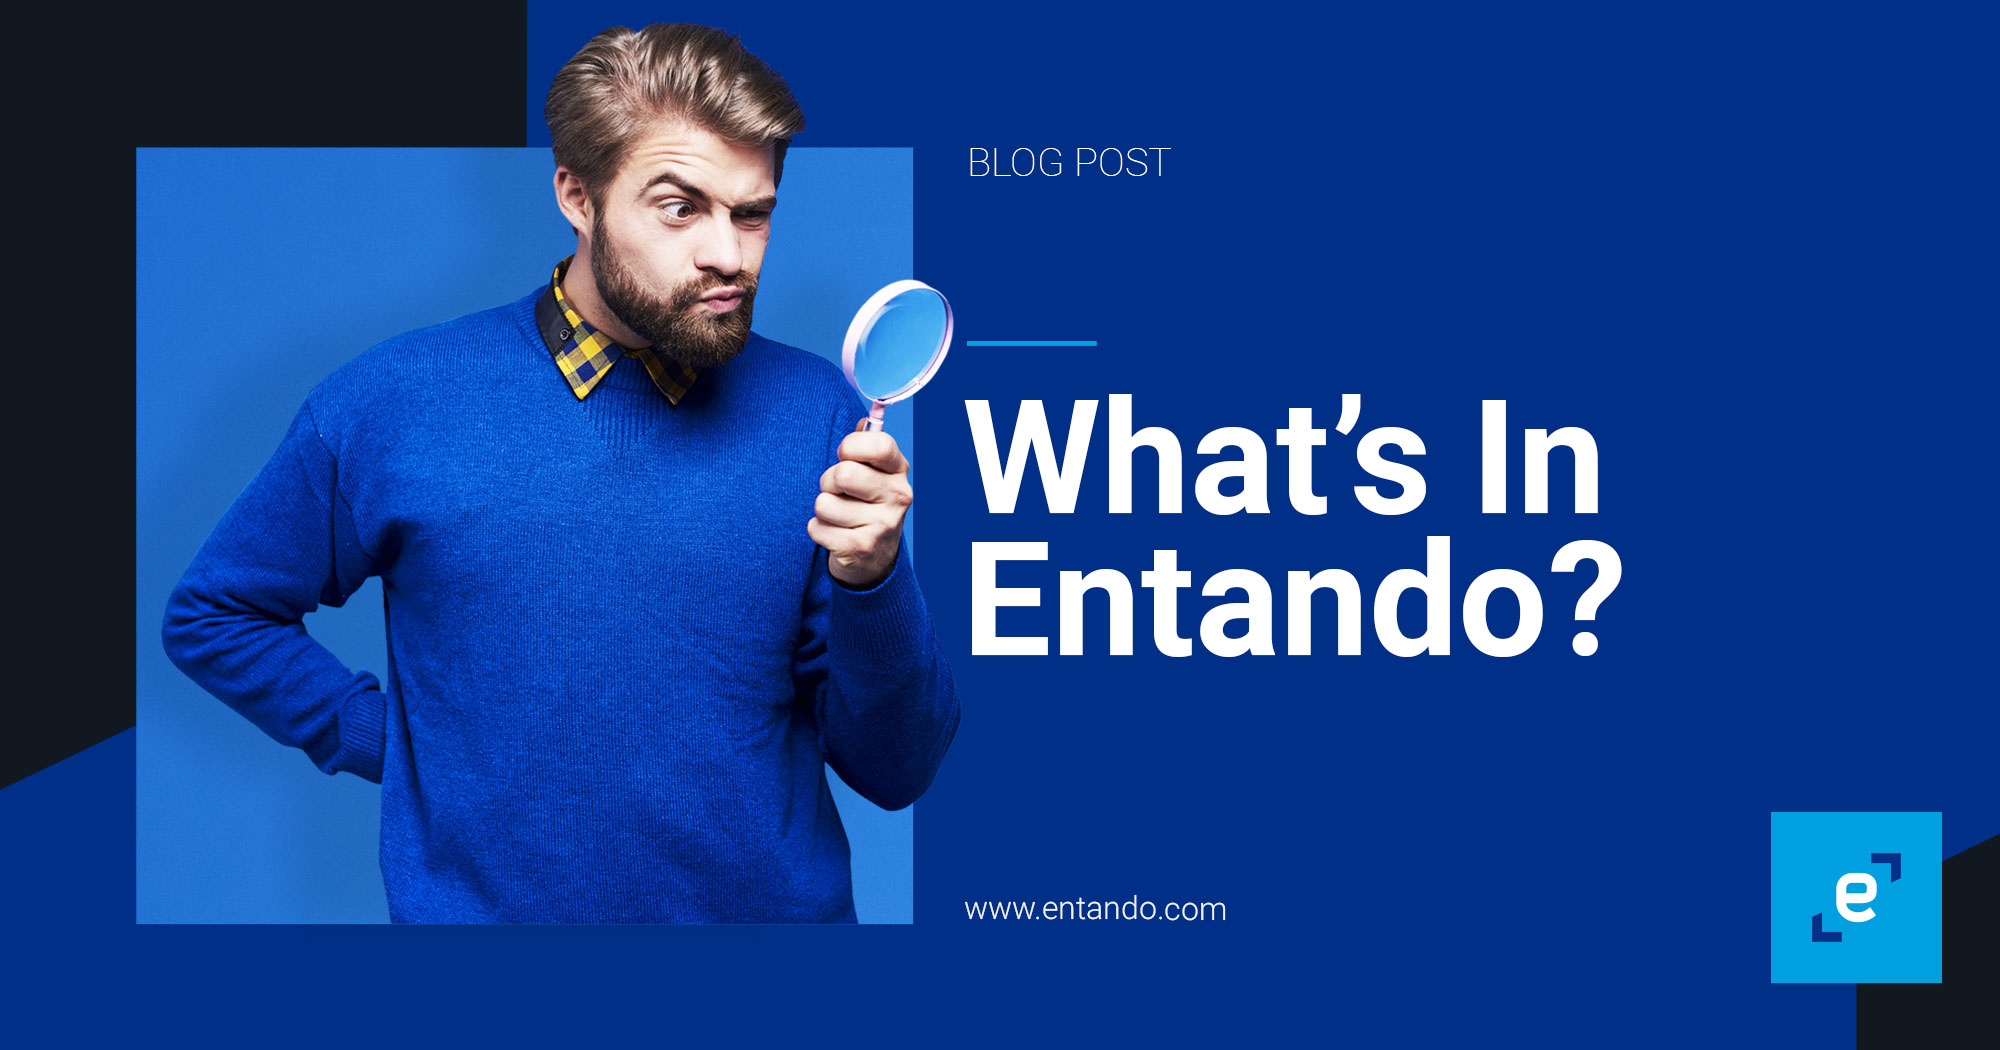 Entando_Tuesday_What-in-Entando-_Blog_post.jpg